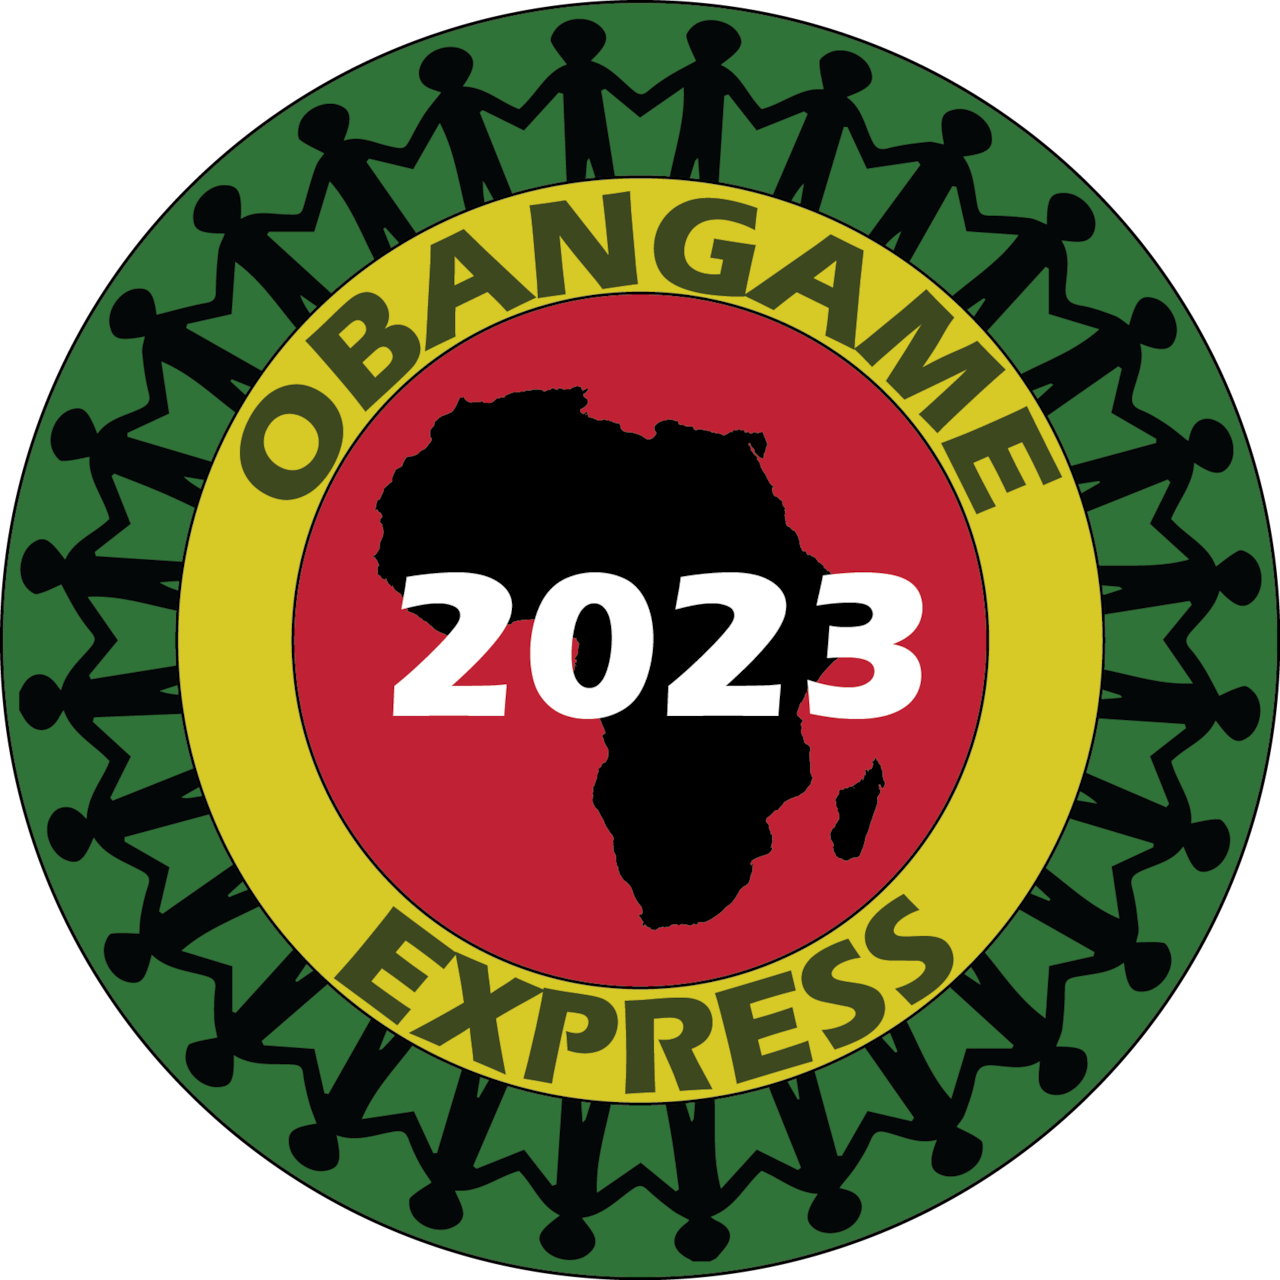 Internationale oefening Obangame Express 2023 gepland om te beginnen > US Navy > Nieuwsverhalen